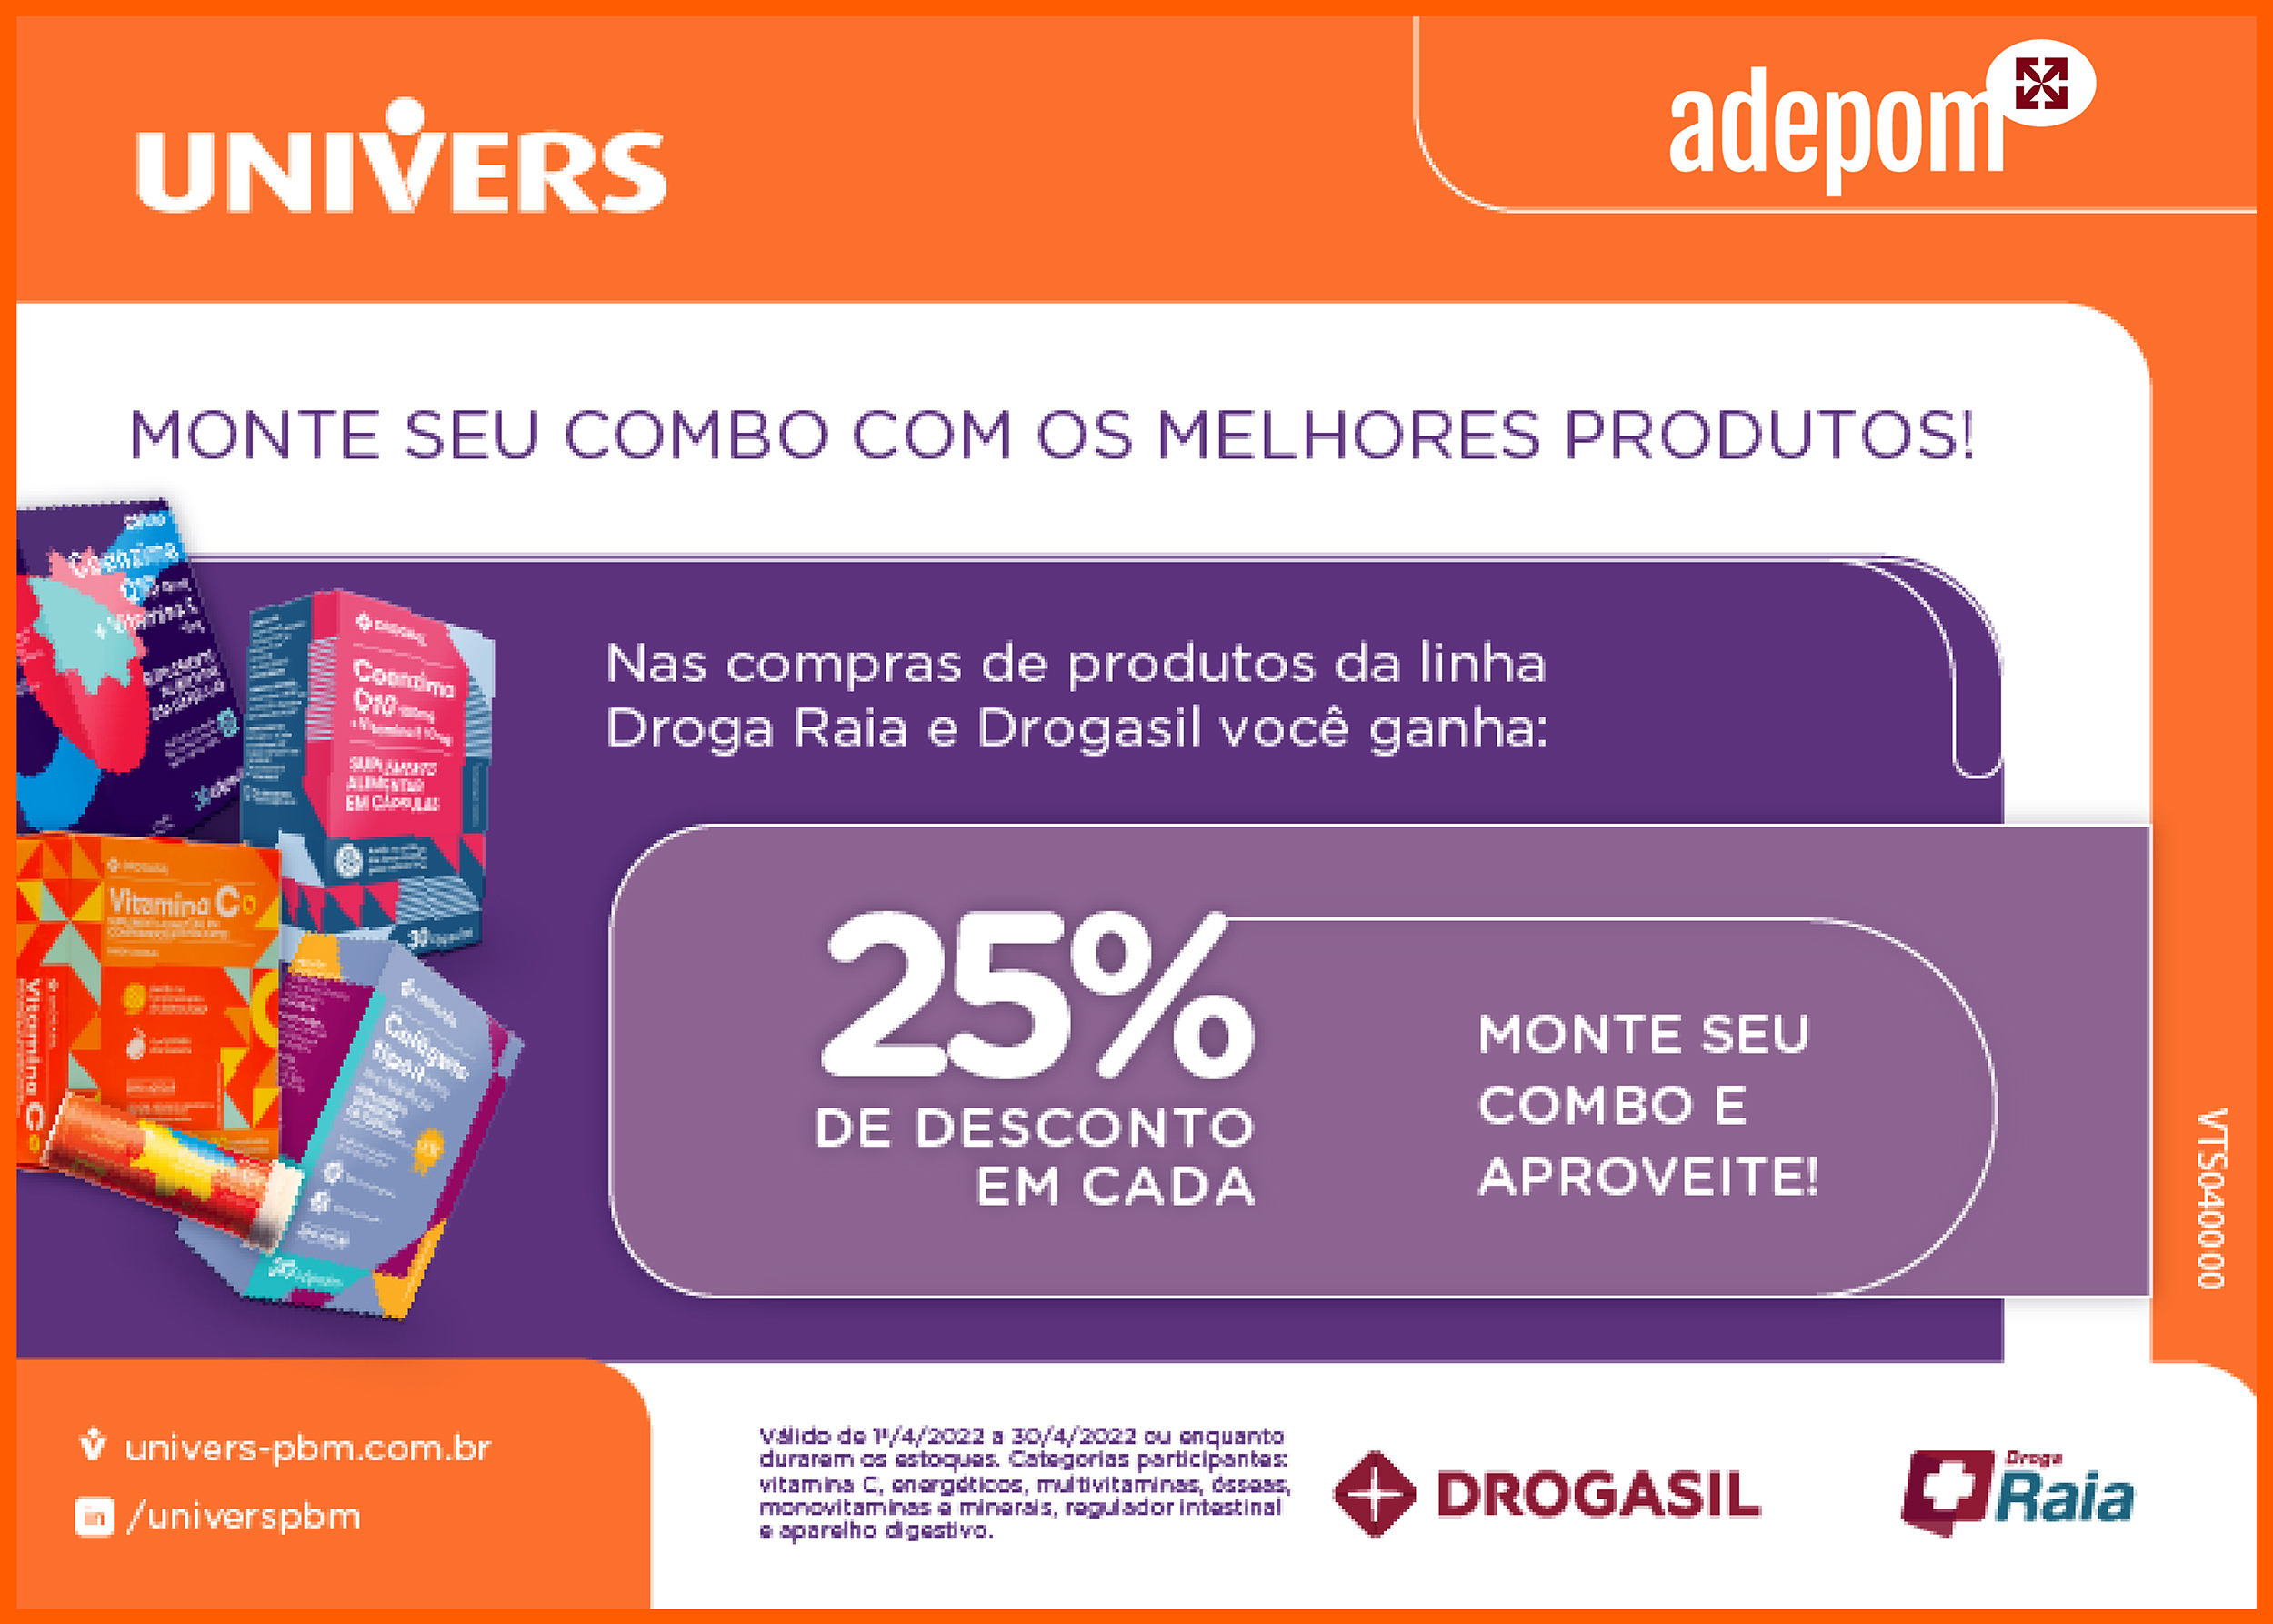 Produtos da linha Droga Raia e Drogasil com 25% de desconto para associados  - Adepom